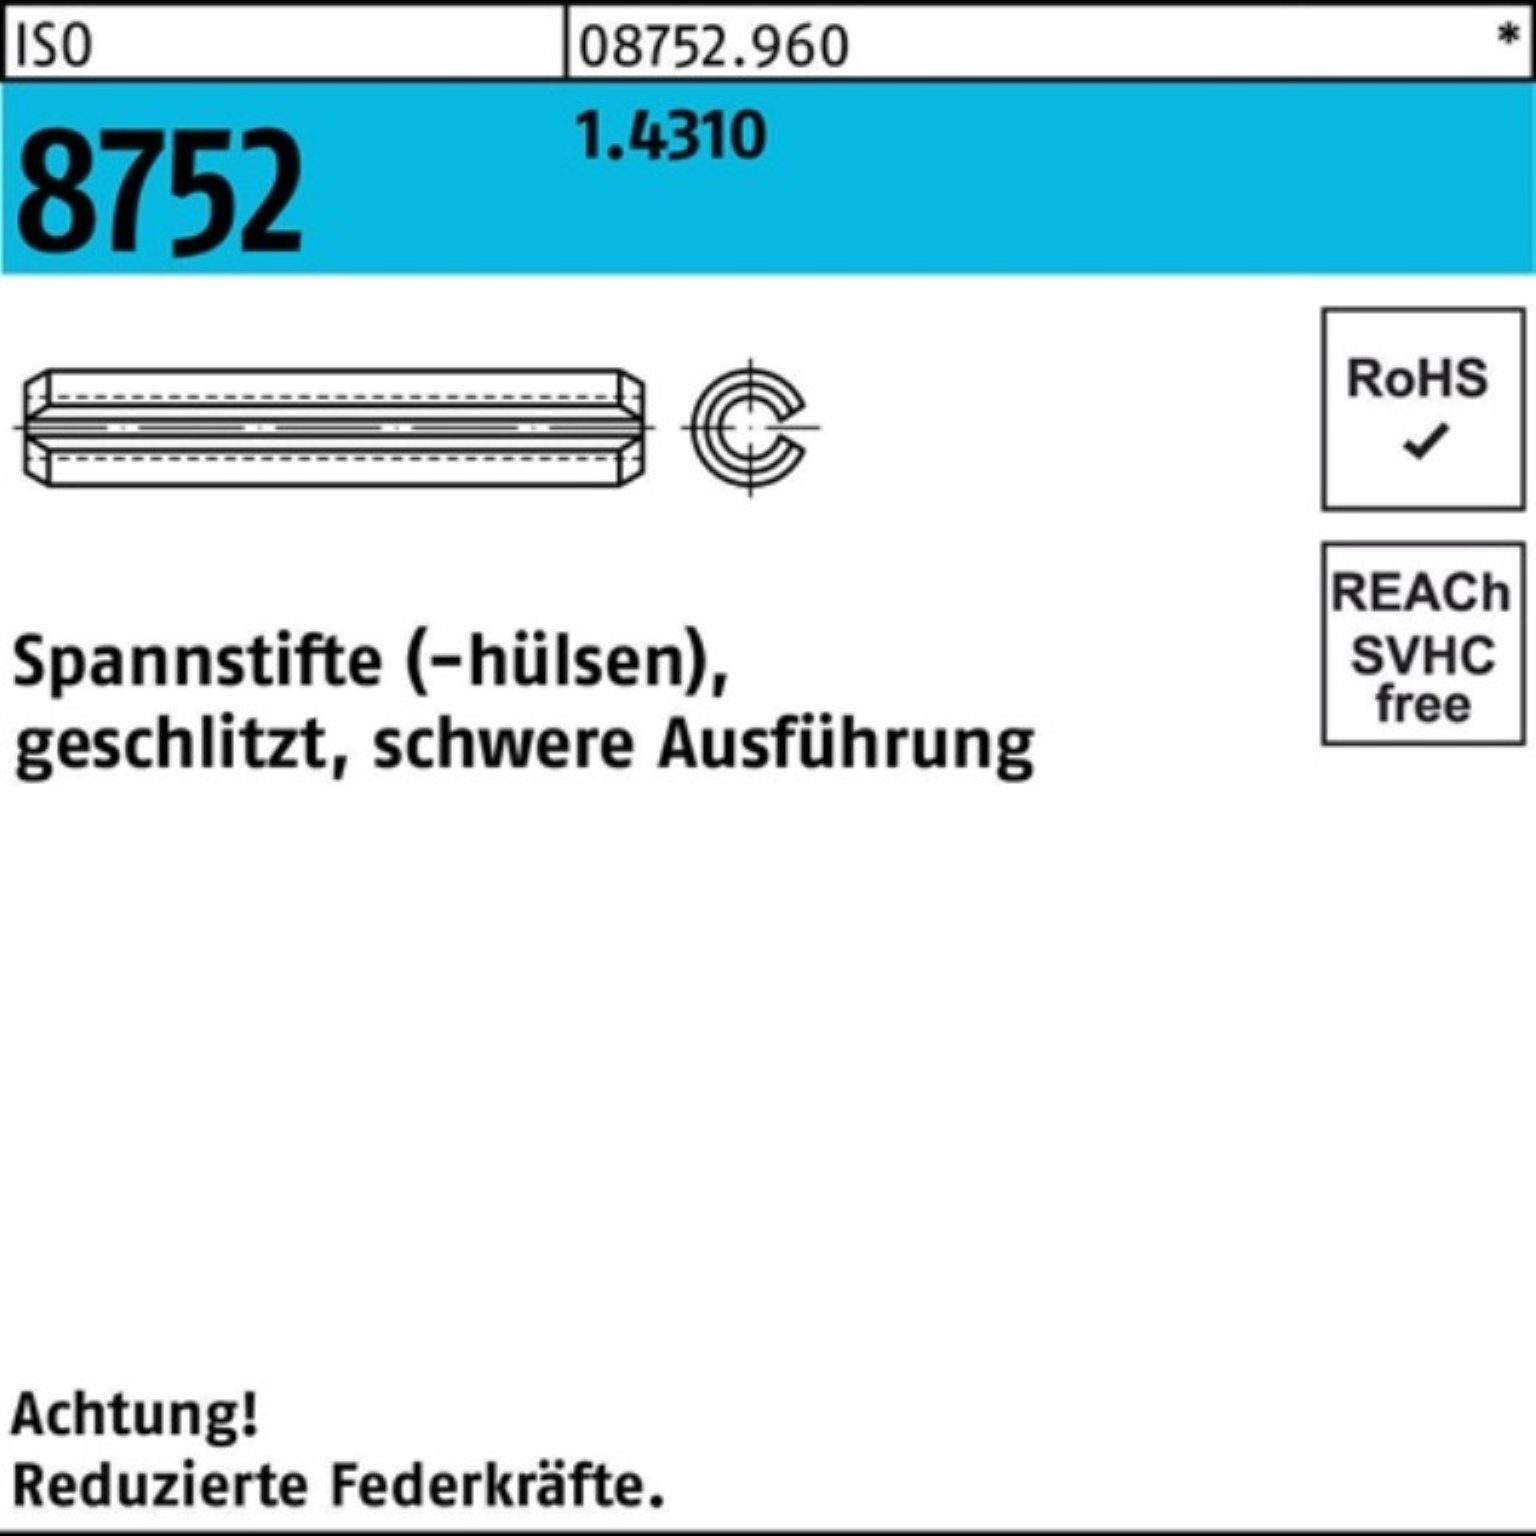 Reyher Spannstift 100er Pack Spannstift schwere 1.4310 geschlitzt Ausf. 40 8752 ISO 2 6x